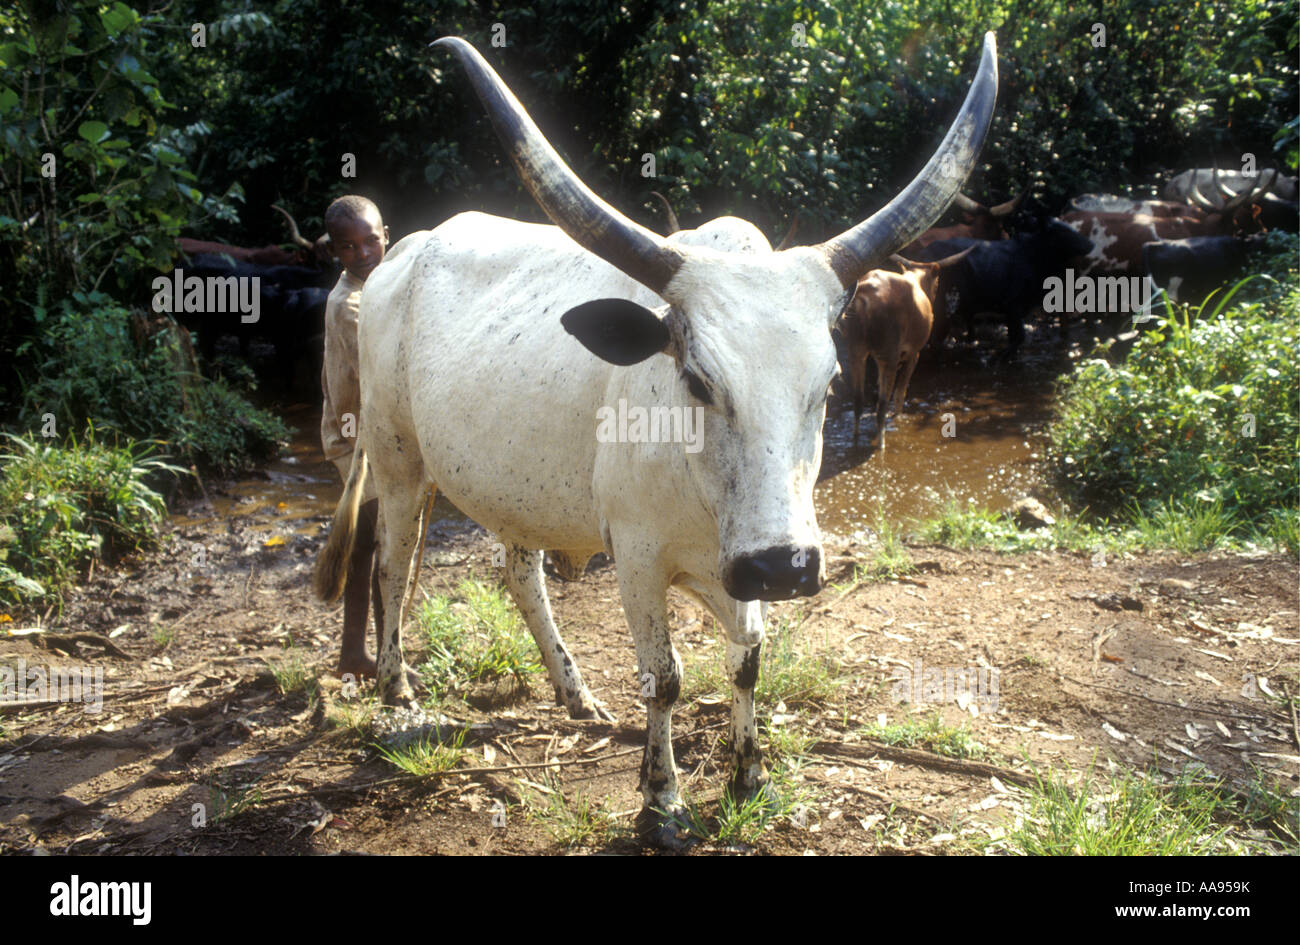 Jeunes bovins herder avec l'une de ses vaches Ankole avec cornes spectaculaires au sud-ouest de l'Ouganda Banque D'Images